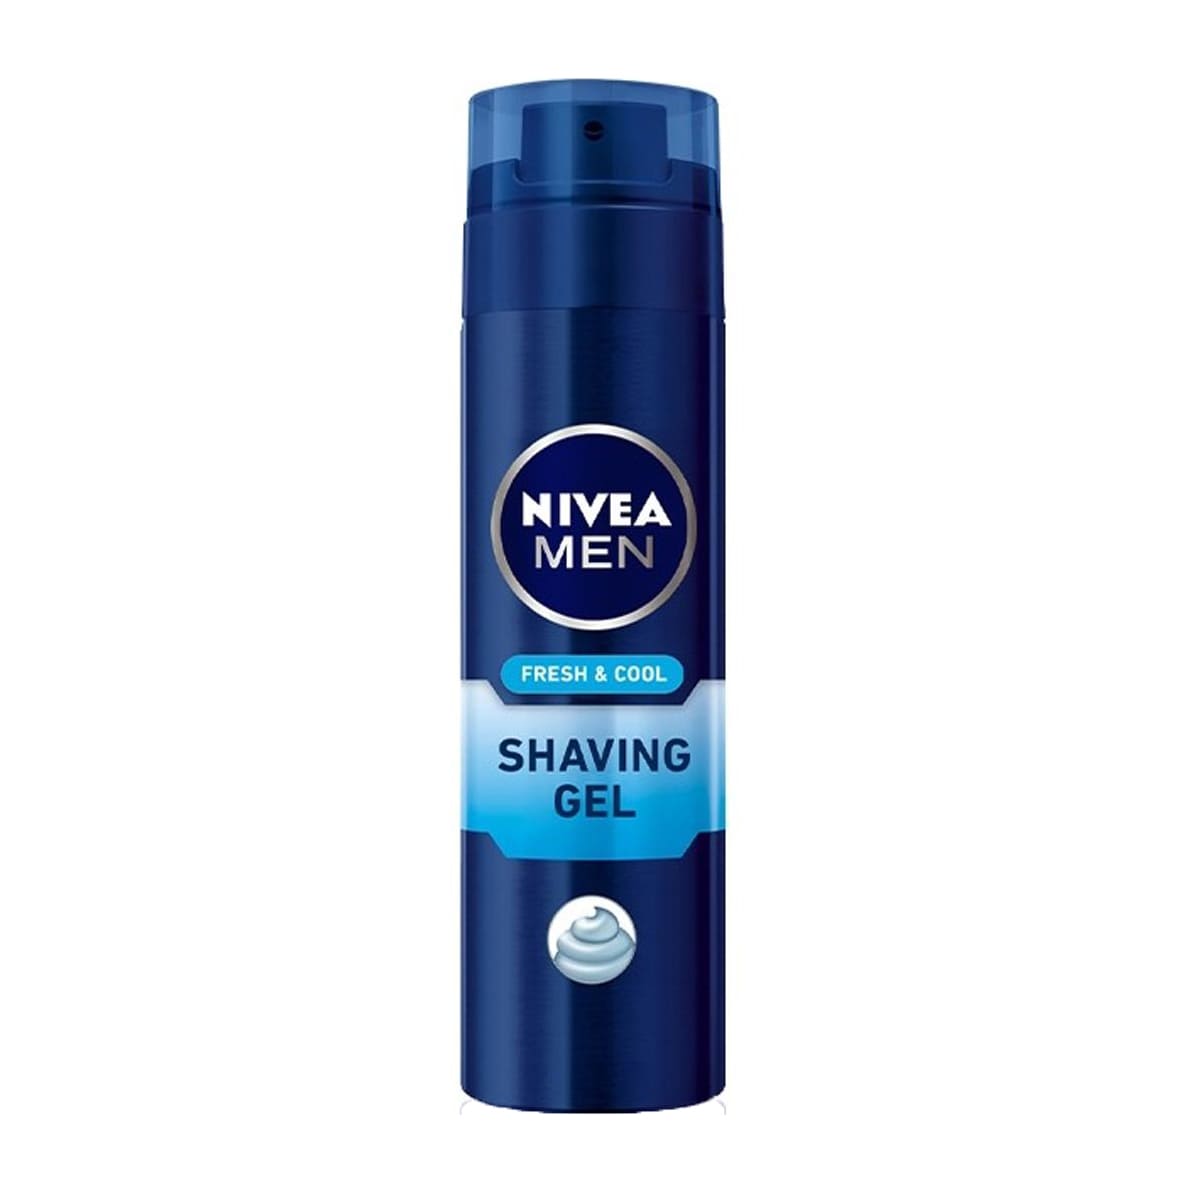 Nivea Men Fresh & Cool Shaving Gel - 200ml - Bloom Pharmacy